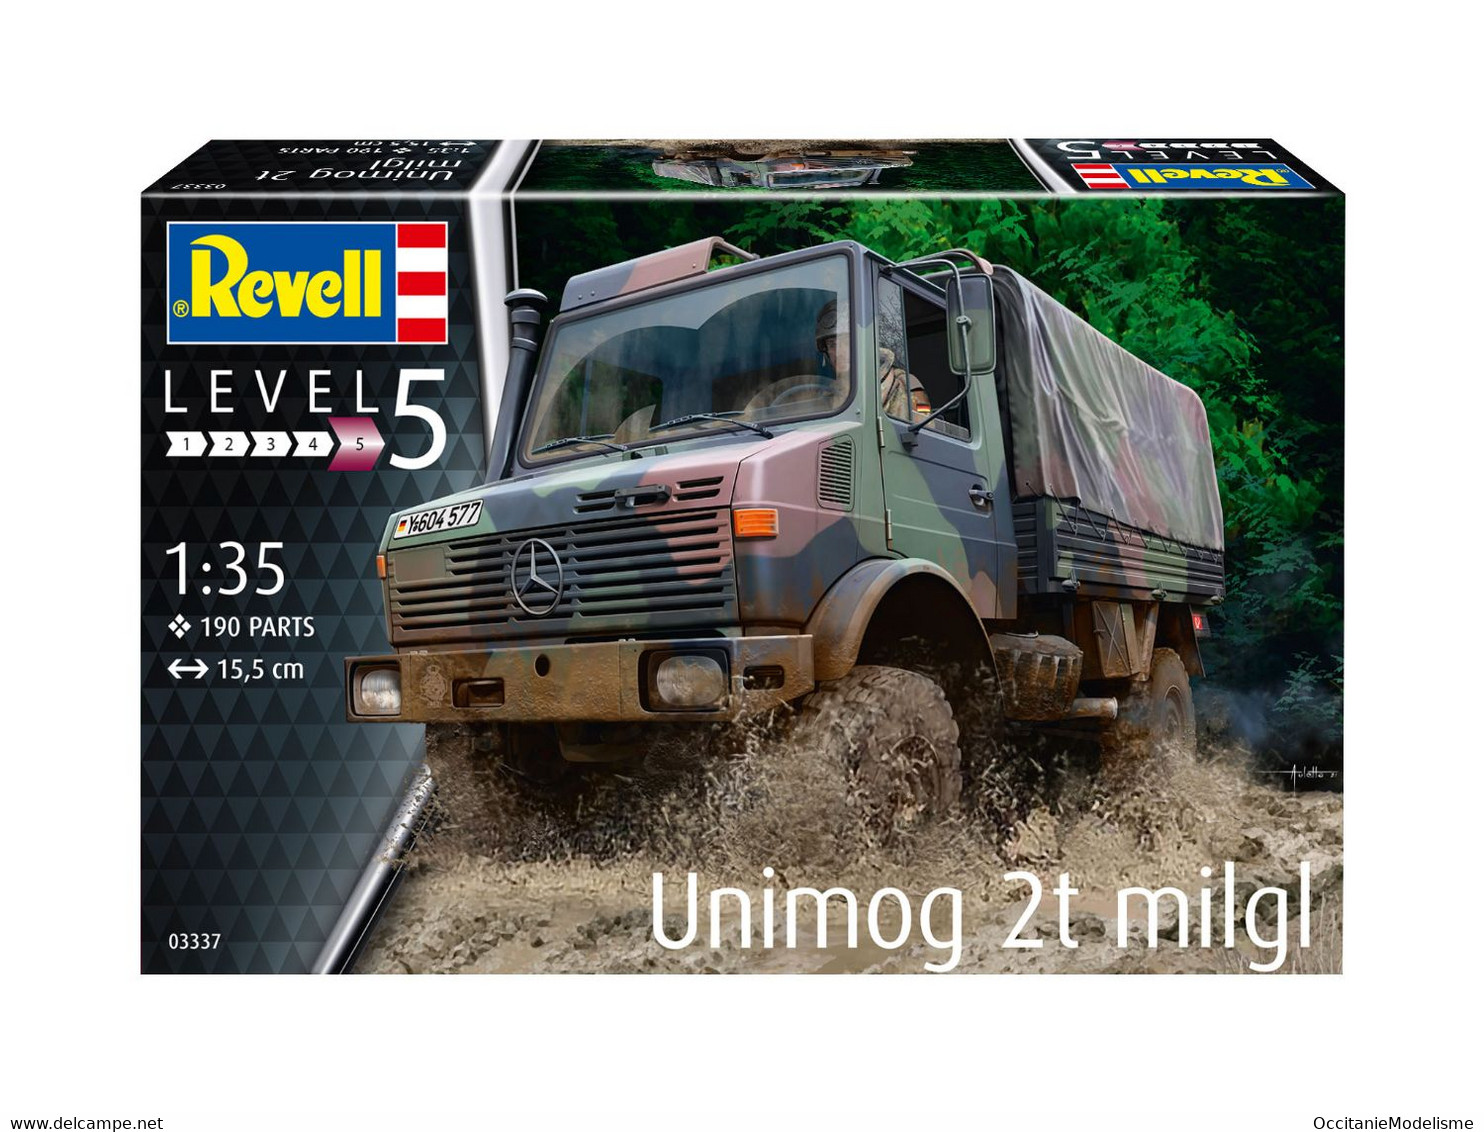 Revell - Mercedes UNIMOG 2T milgl maquette militaire kit plastique réf. 03337 Neuf NBO 1/35